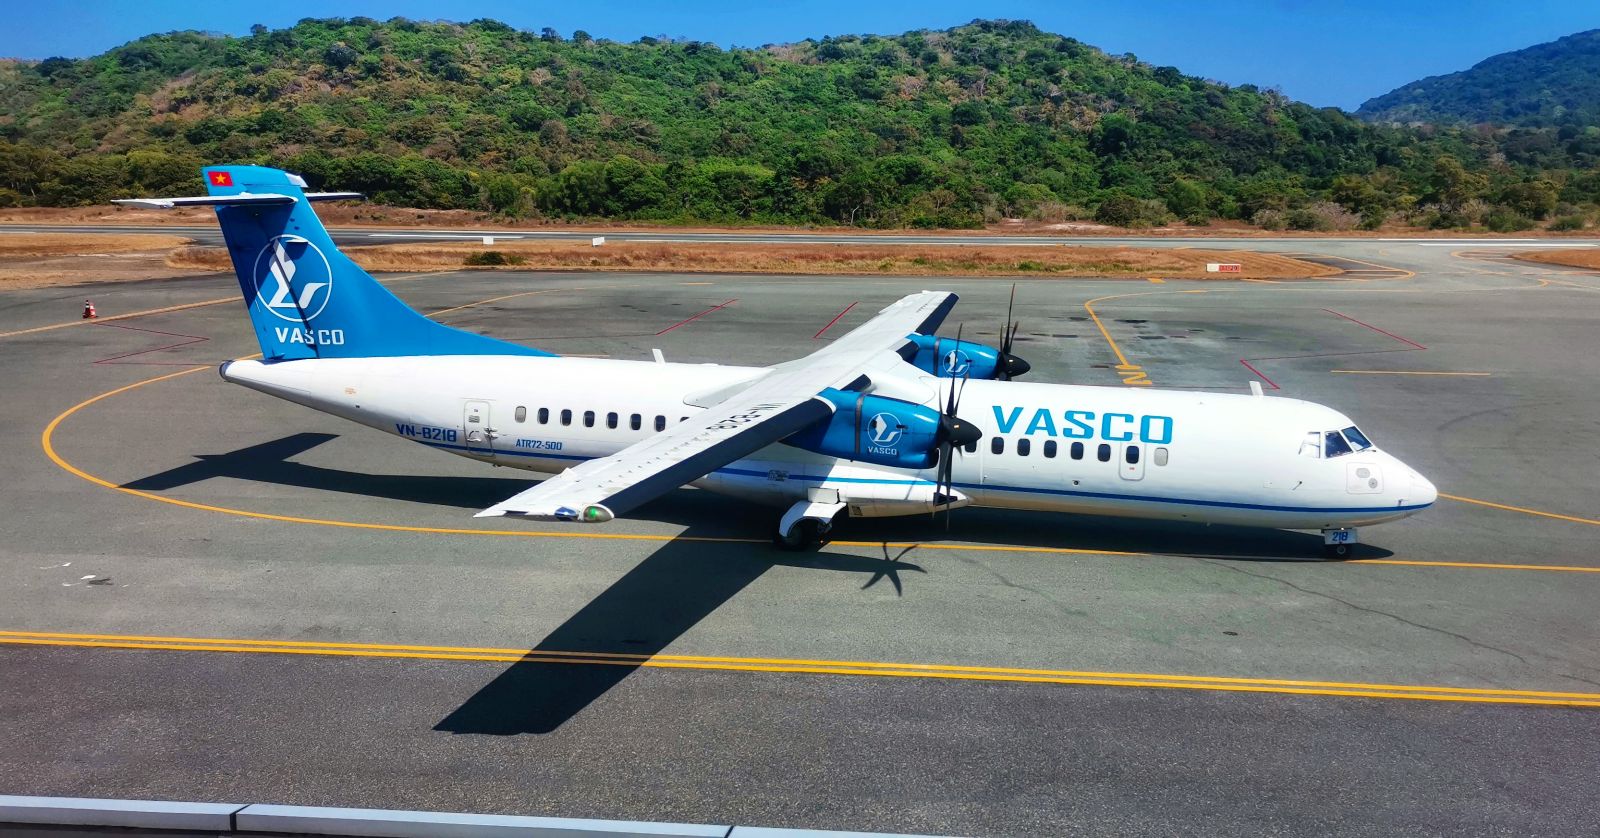 ATR 72-500 là dòng máy bay được Vietnam Airlines khai thác phục vụ 2 đường bay nội địa